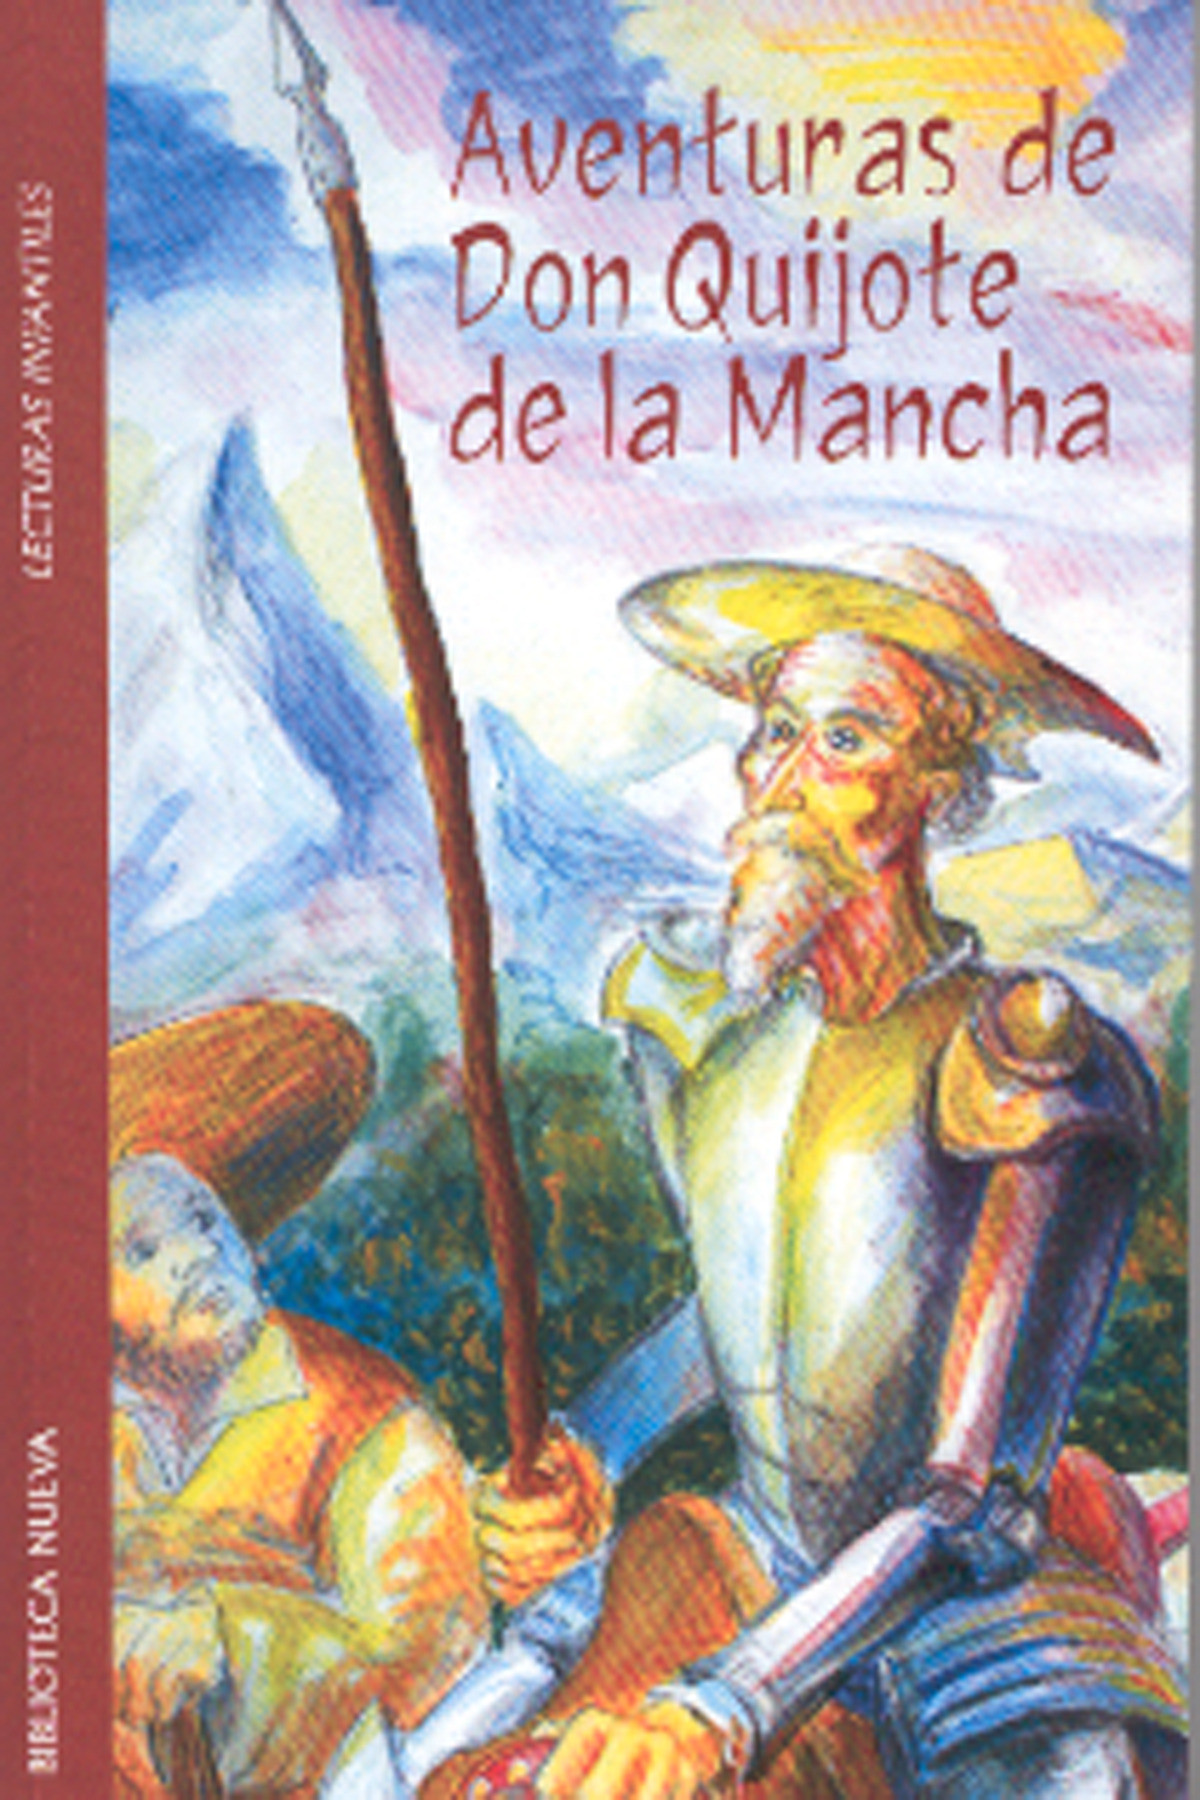 Aventuras de don quijote de la mancha - Cervantes, Miguel De